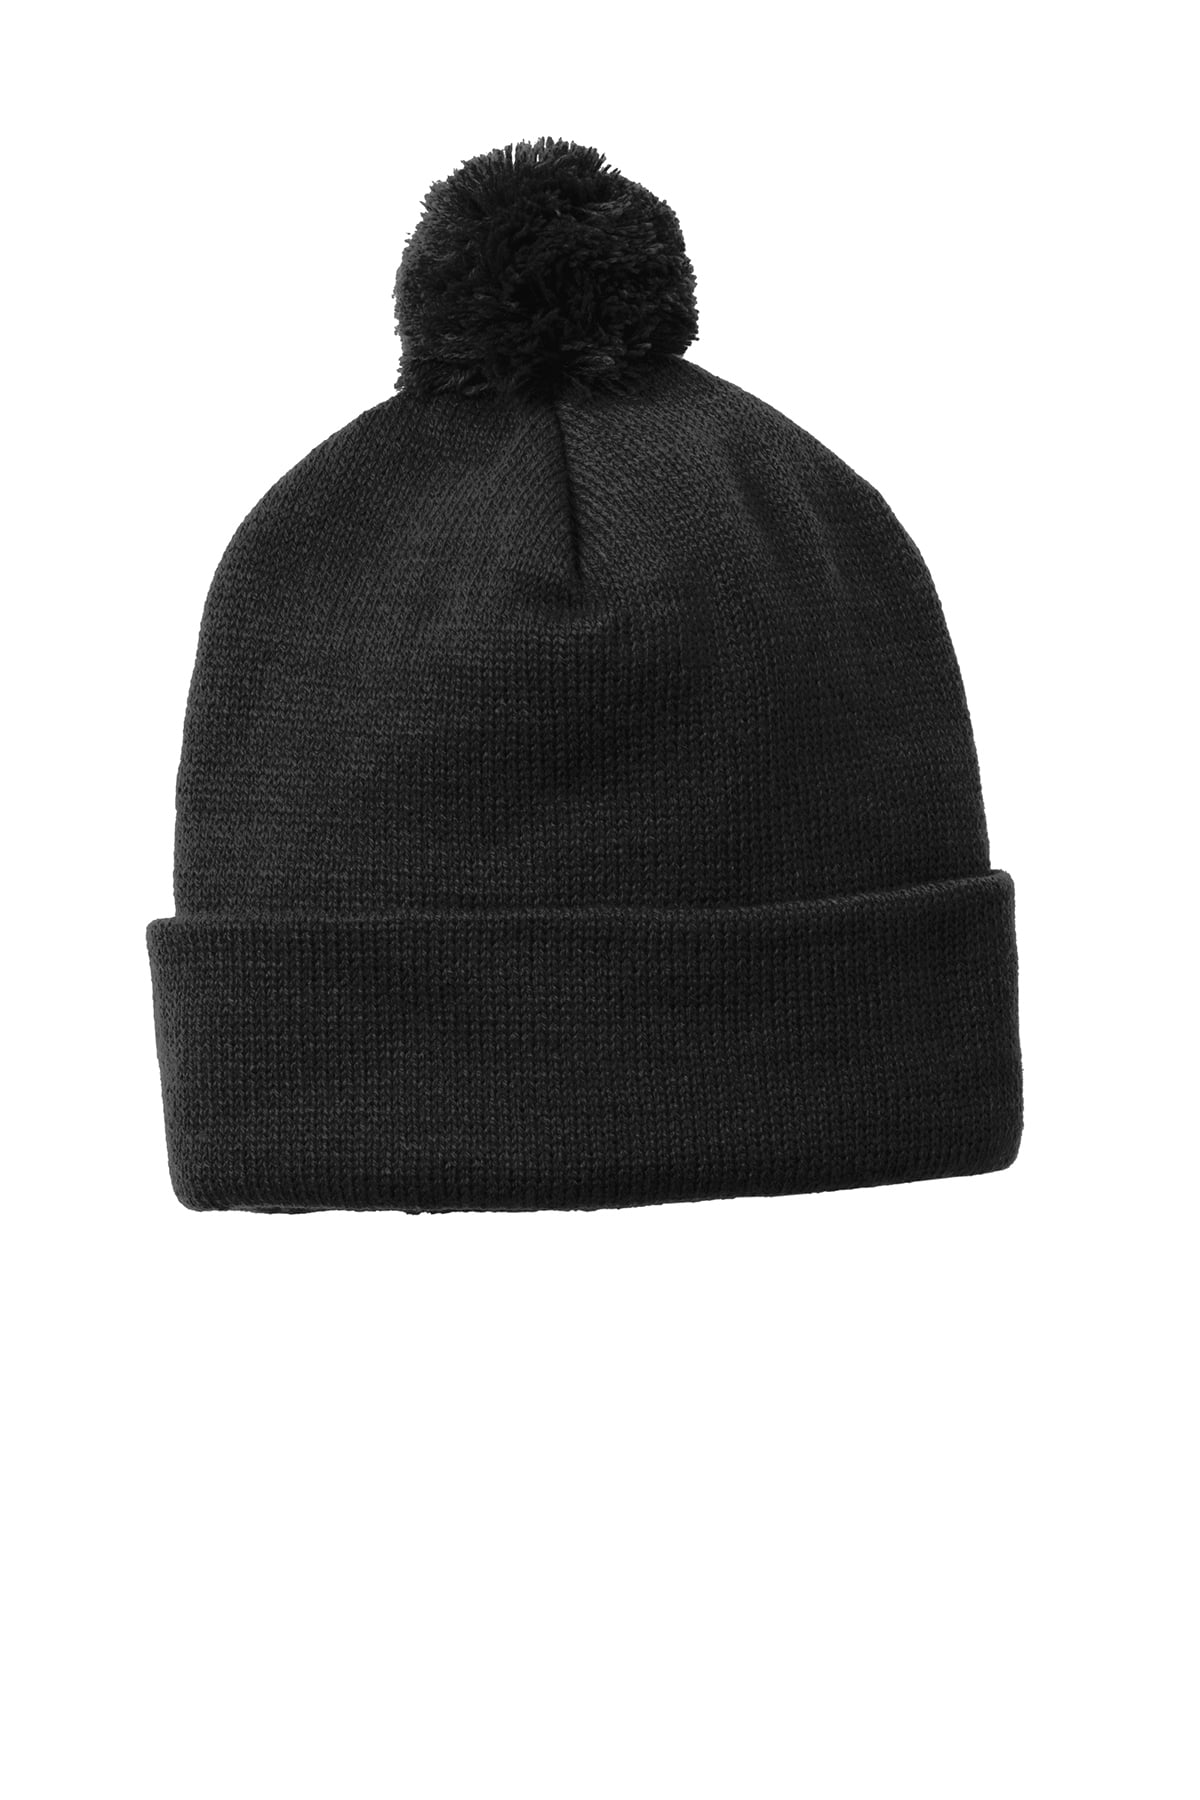 Beanie Black Warm Knit Hat Faux Fur Pom Pom Ball Knit Beanie Ski Cap ...